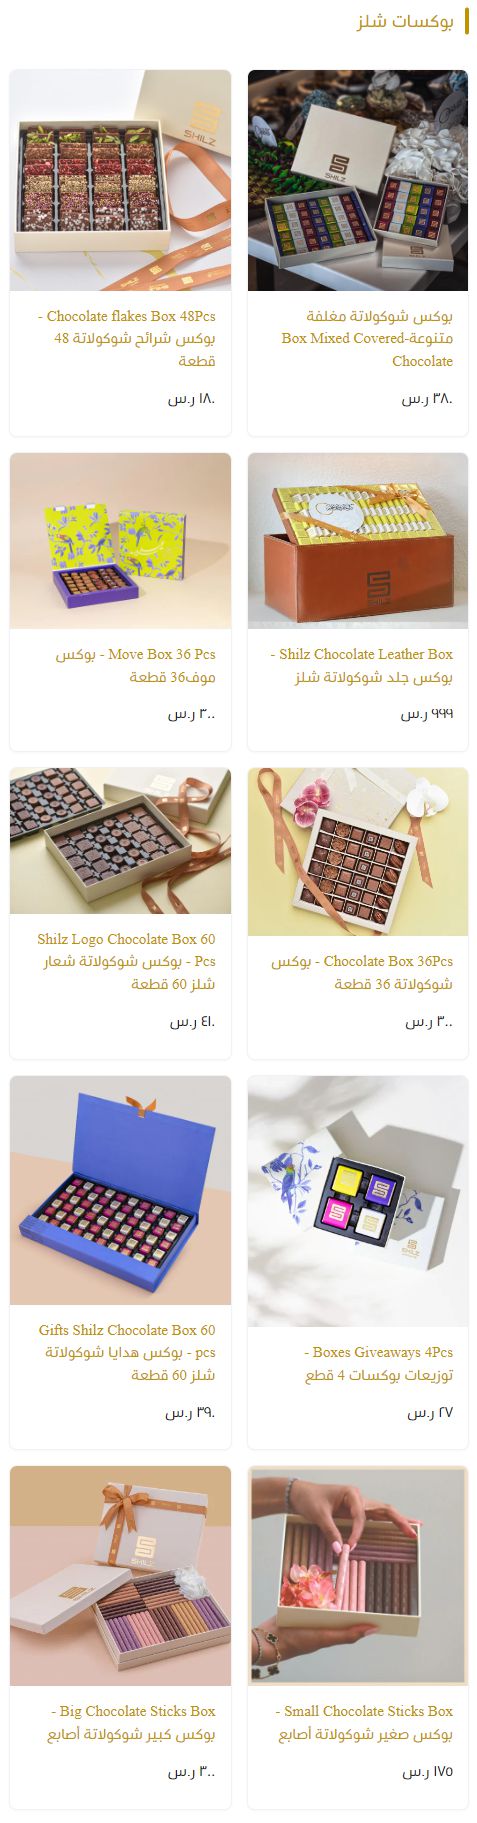 1 3 شوكولاتة شلز Shilz السعودية | منيو + فروع + اسعار